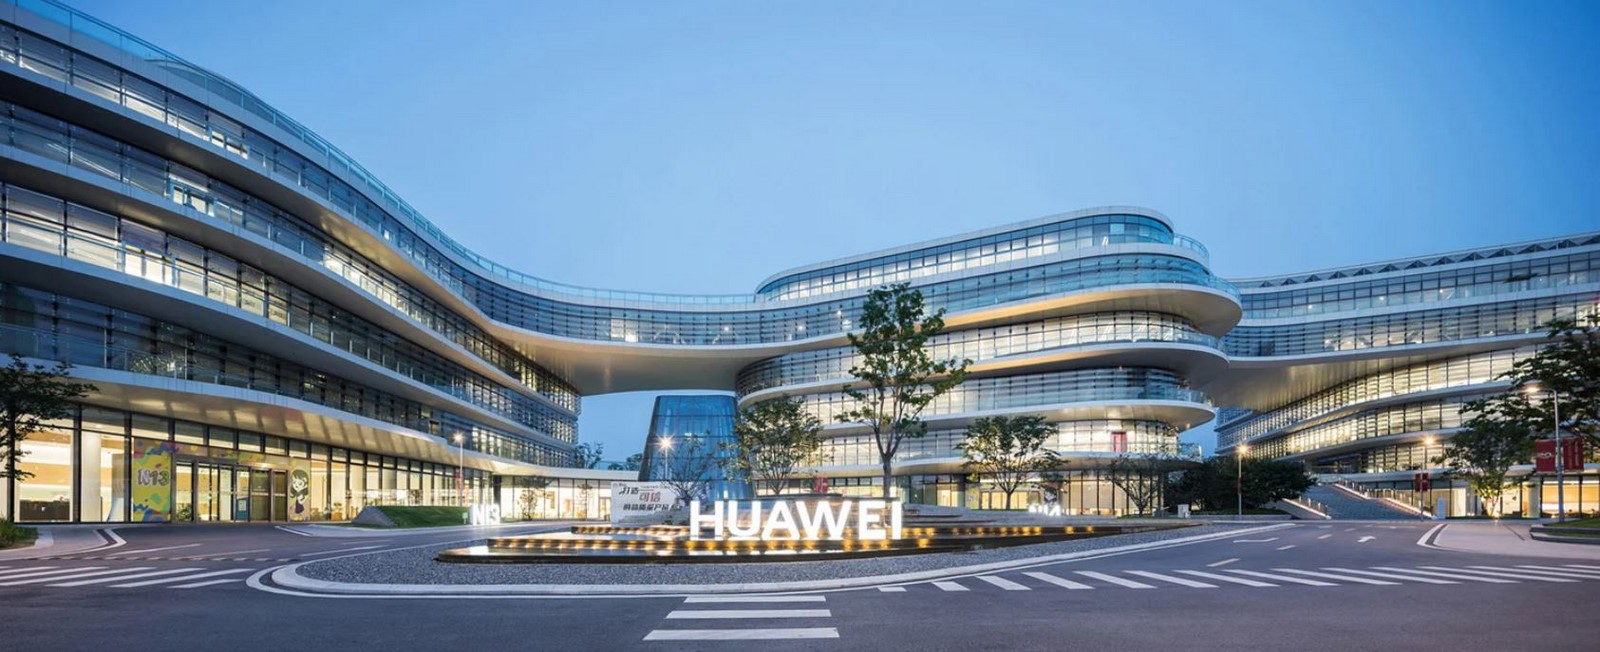 Huawei Nanjing Research & Development Center in Nanjin by Aecom - Sheet1